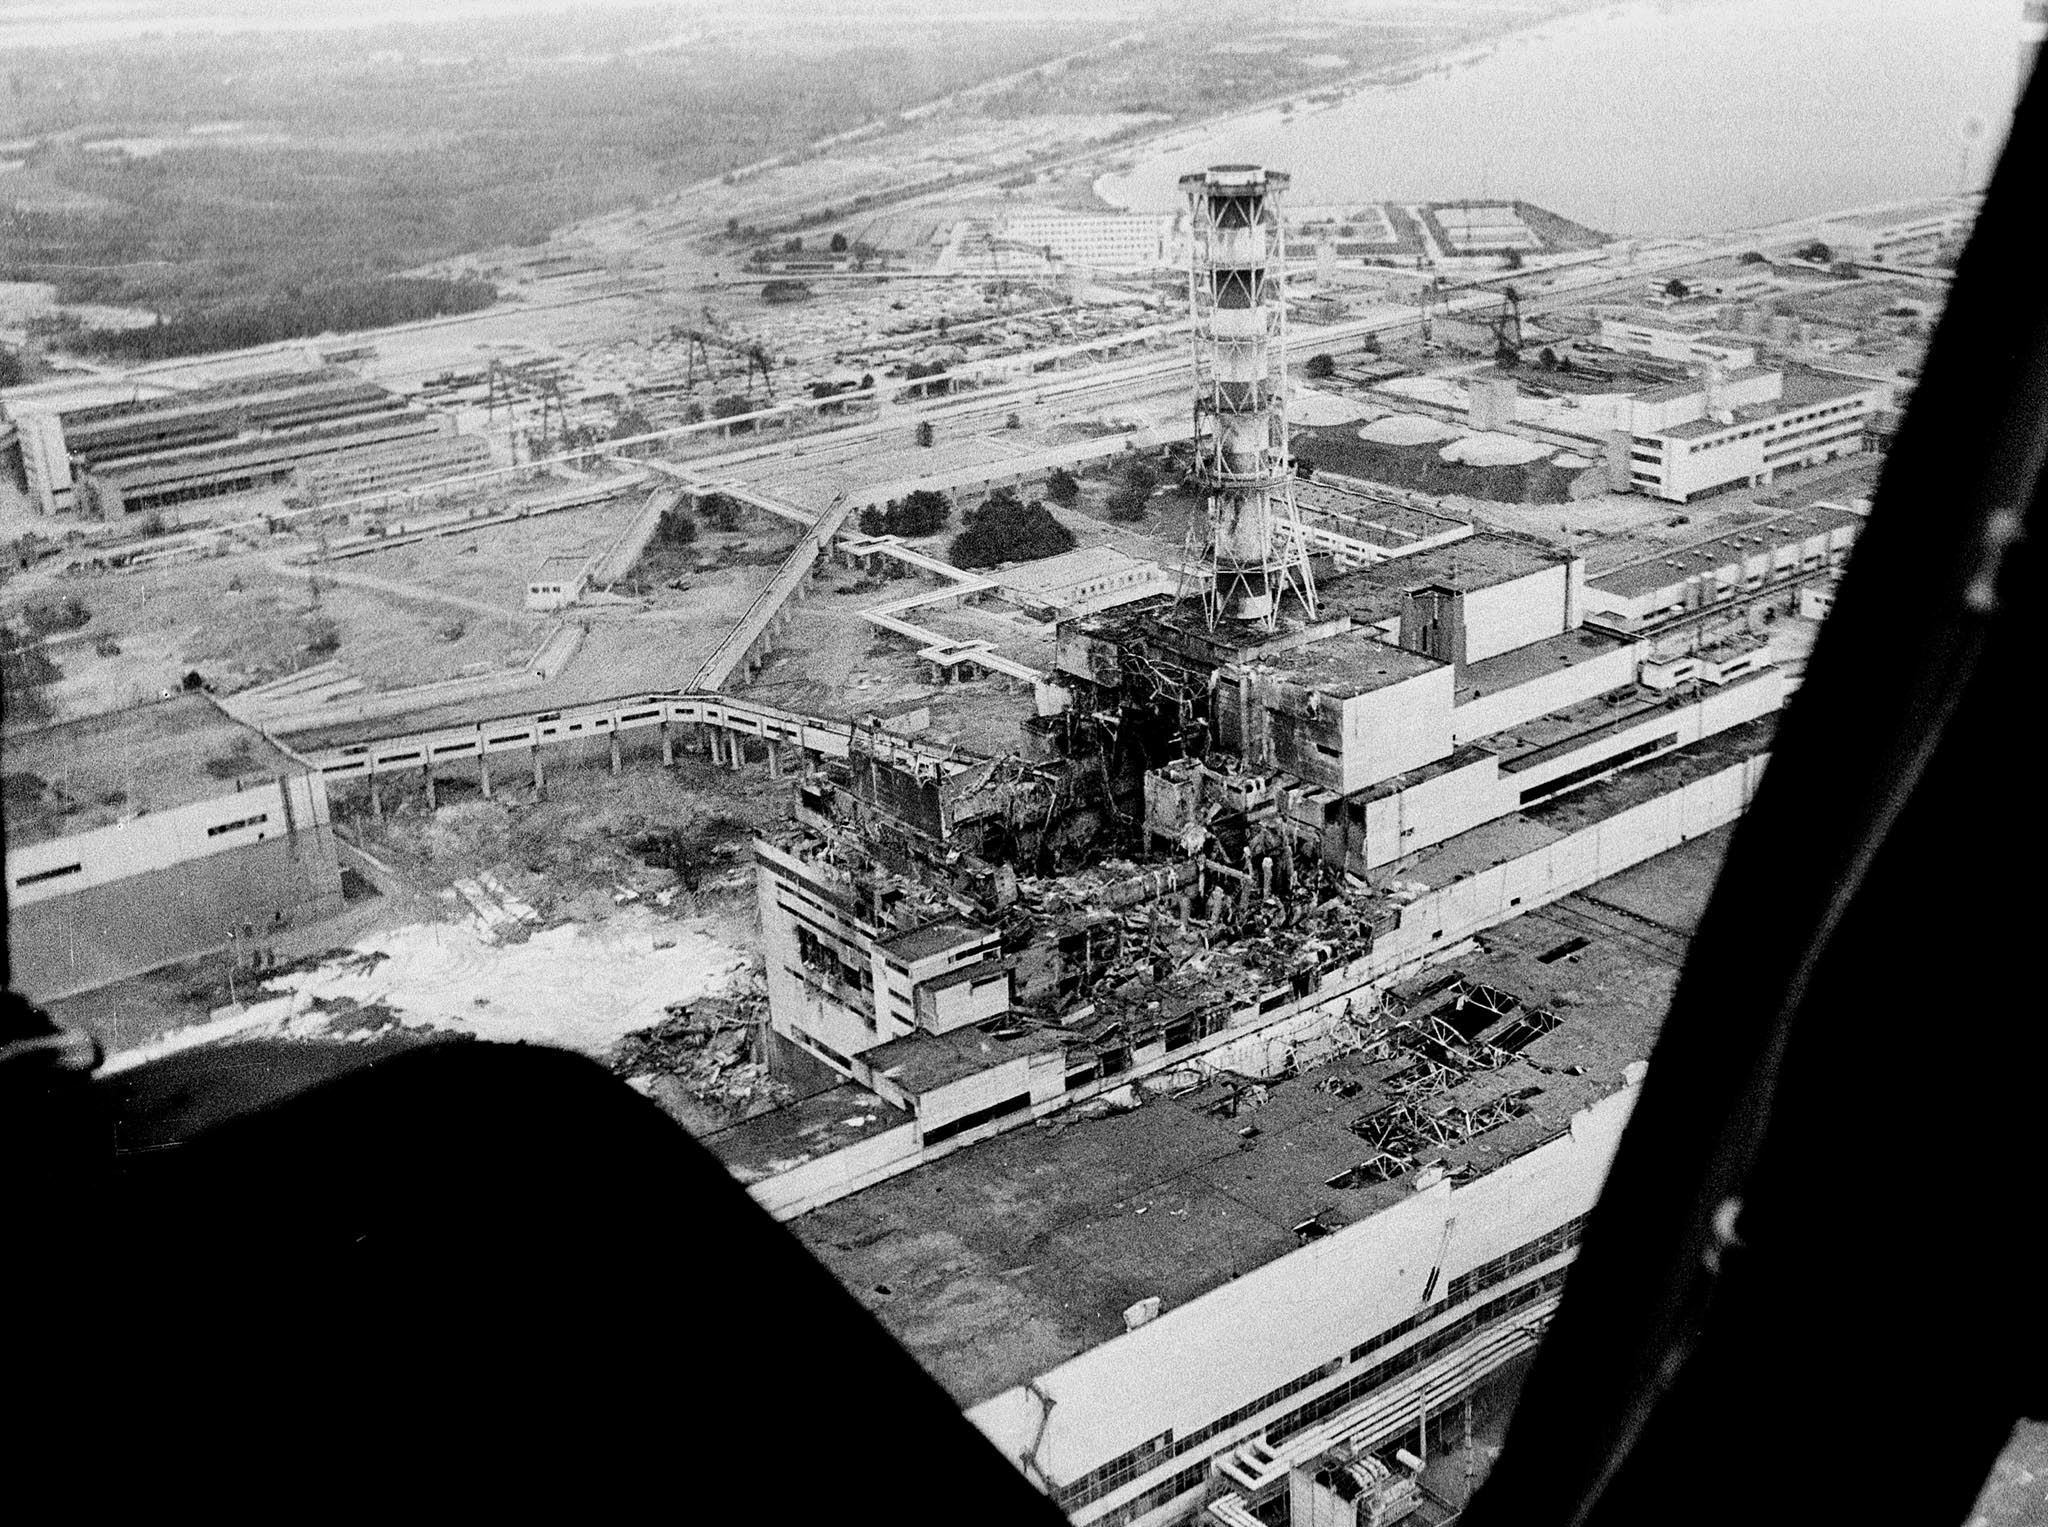 Tisdagen den 26 april är det 25 år sedan härdsmältan i kärnkraftverket Tjernobyl i Ukraina. Över hela världen hedras offren och kärnkraftsdebatten tar ny fart.